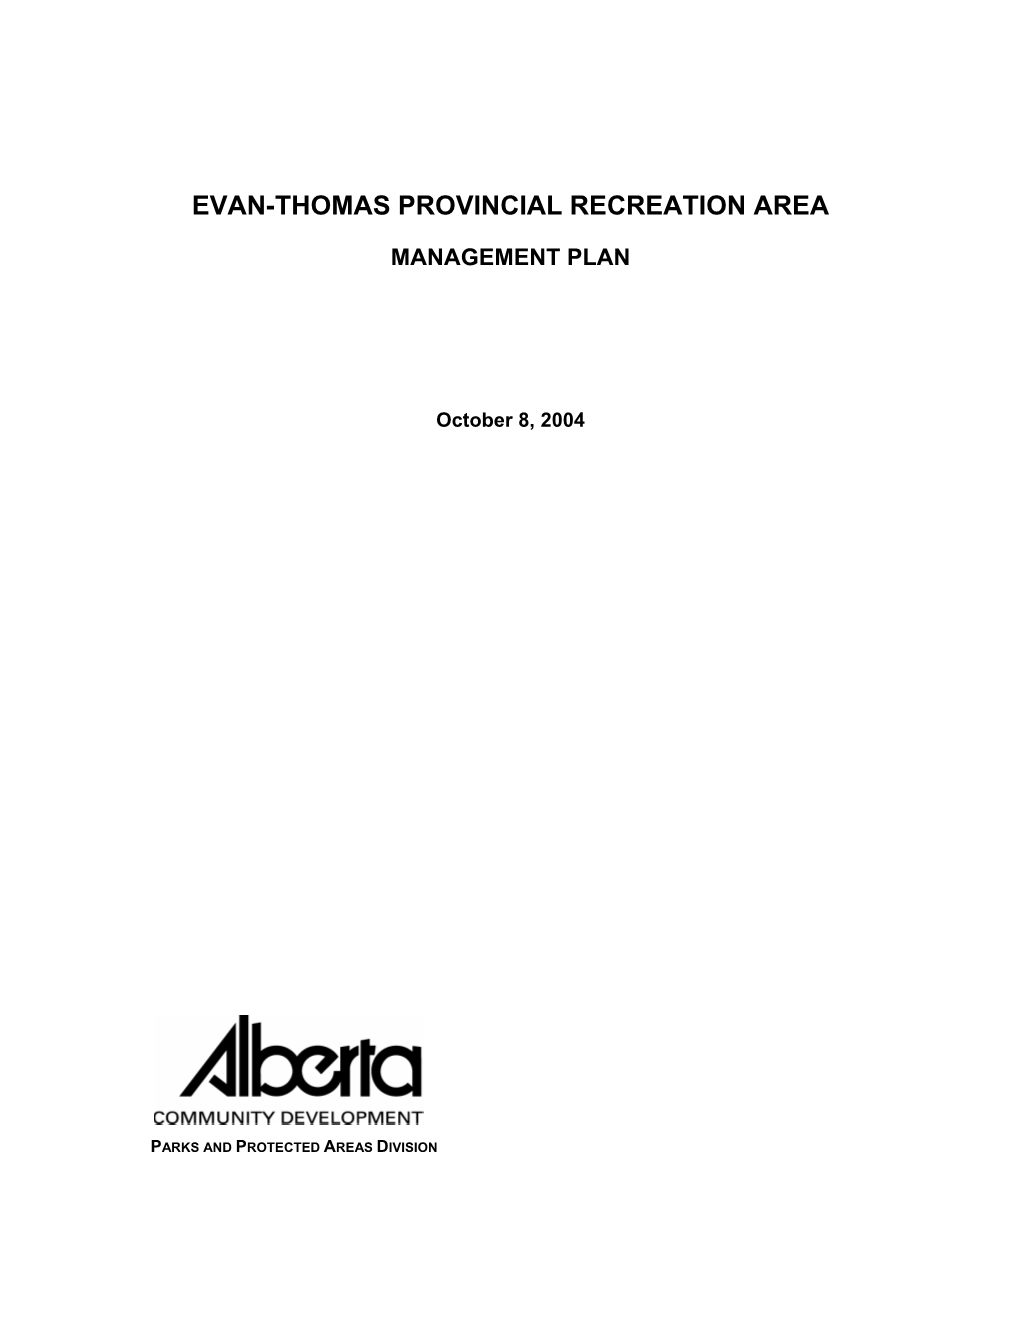 Evan-Thomas Provincial Recreation Area